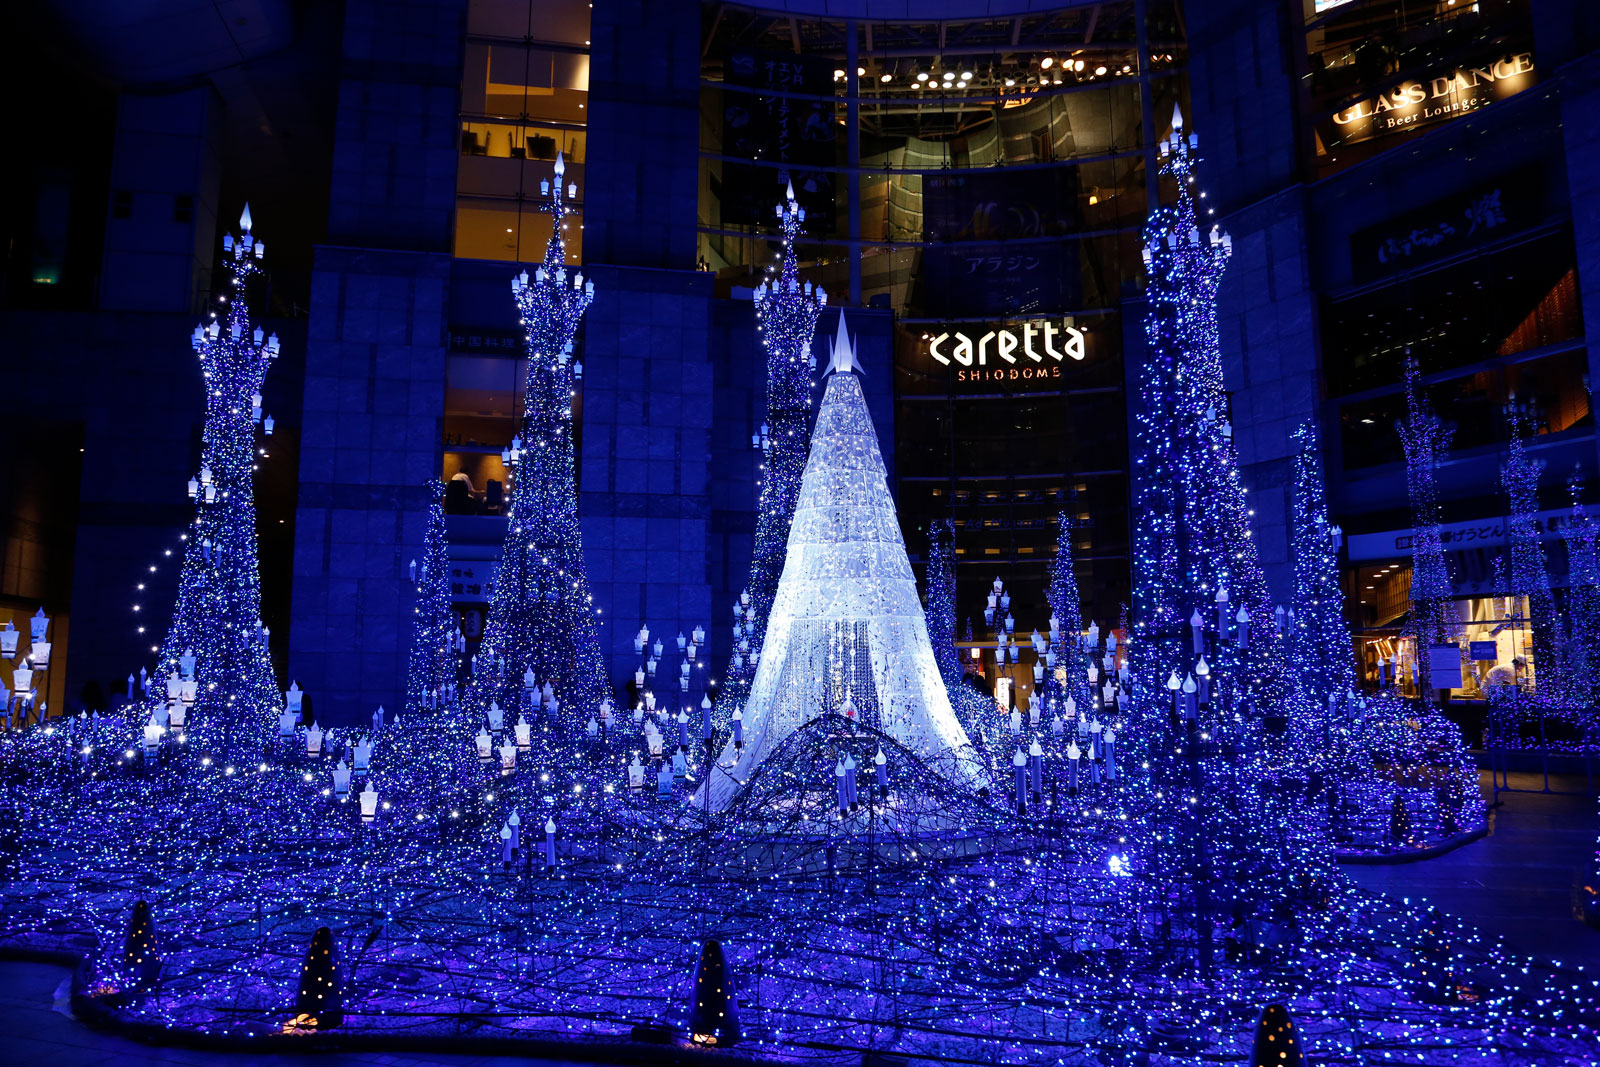 Lichtspektakel im Einkaufszentrum Caretta Shiodome.